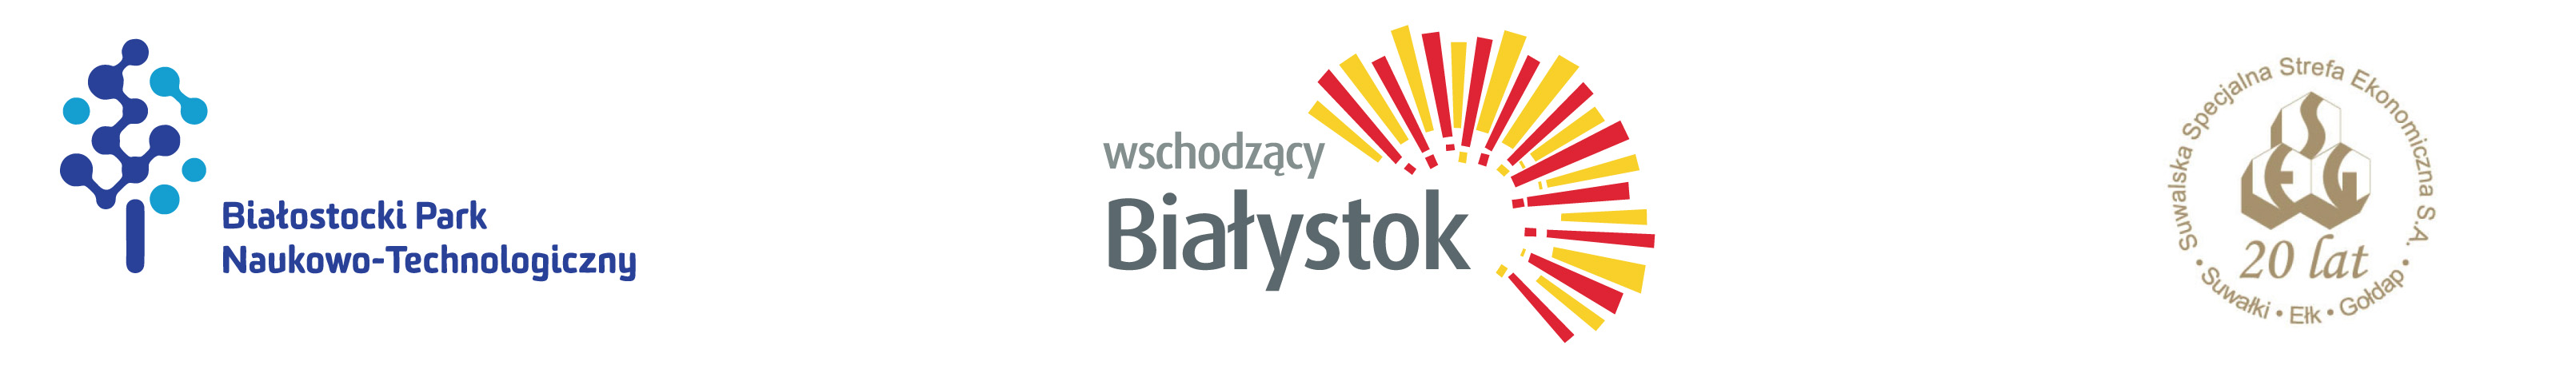 Logo BPNT, Wschodzący Białystok i SSSE